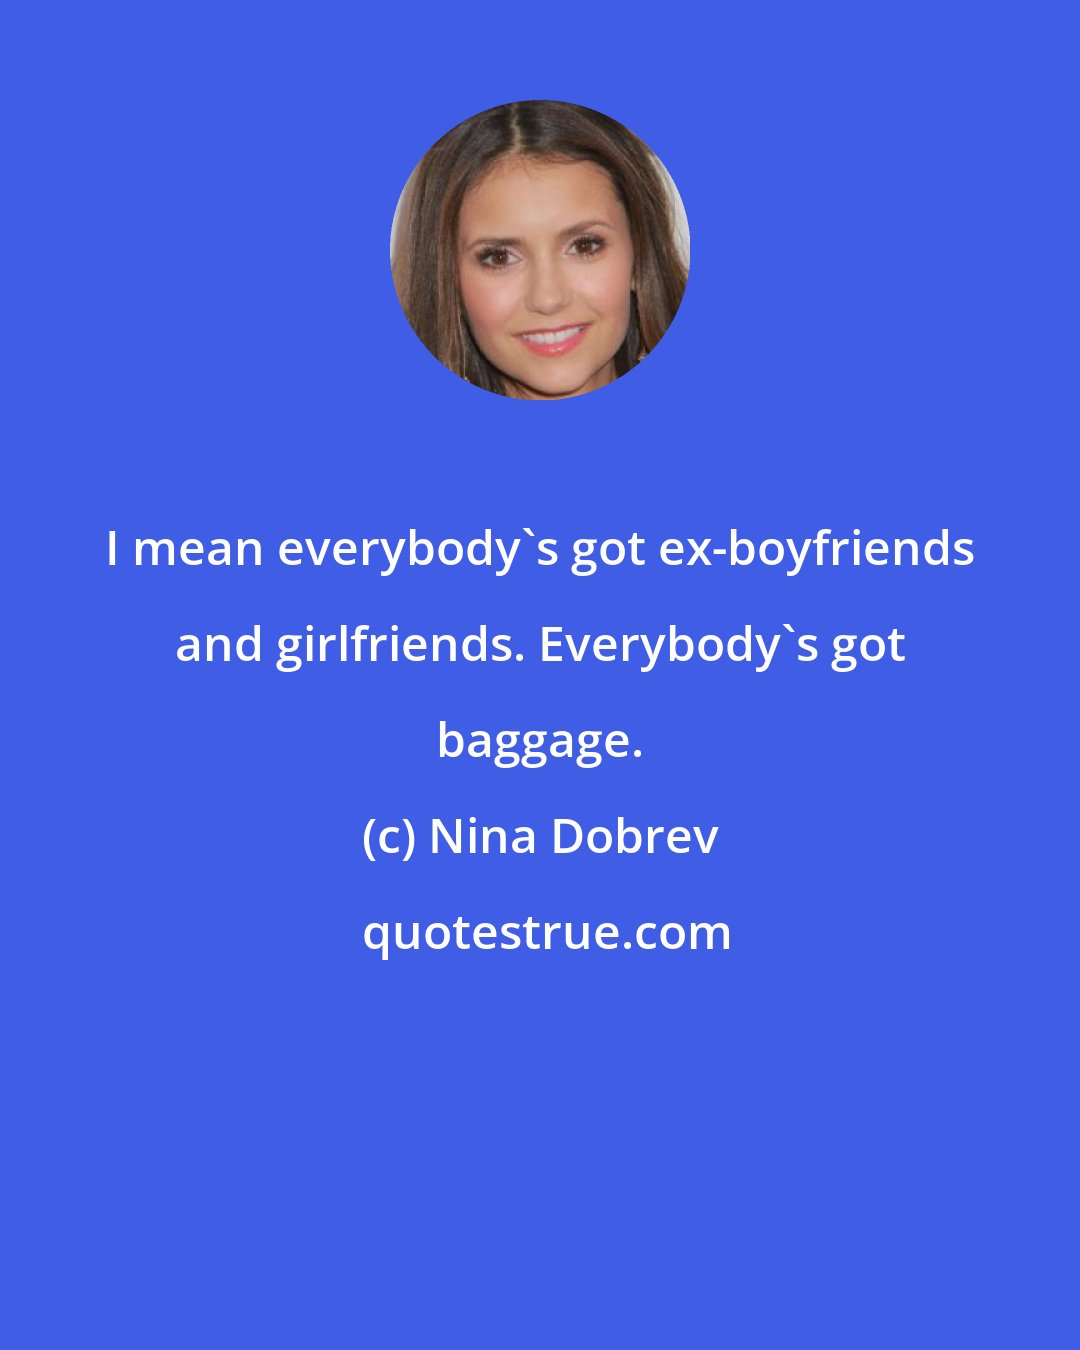 Nina Dobrev: I mean everybody's got ex-boyfriends and girlfriends. Everybody's got baggage.